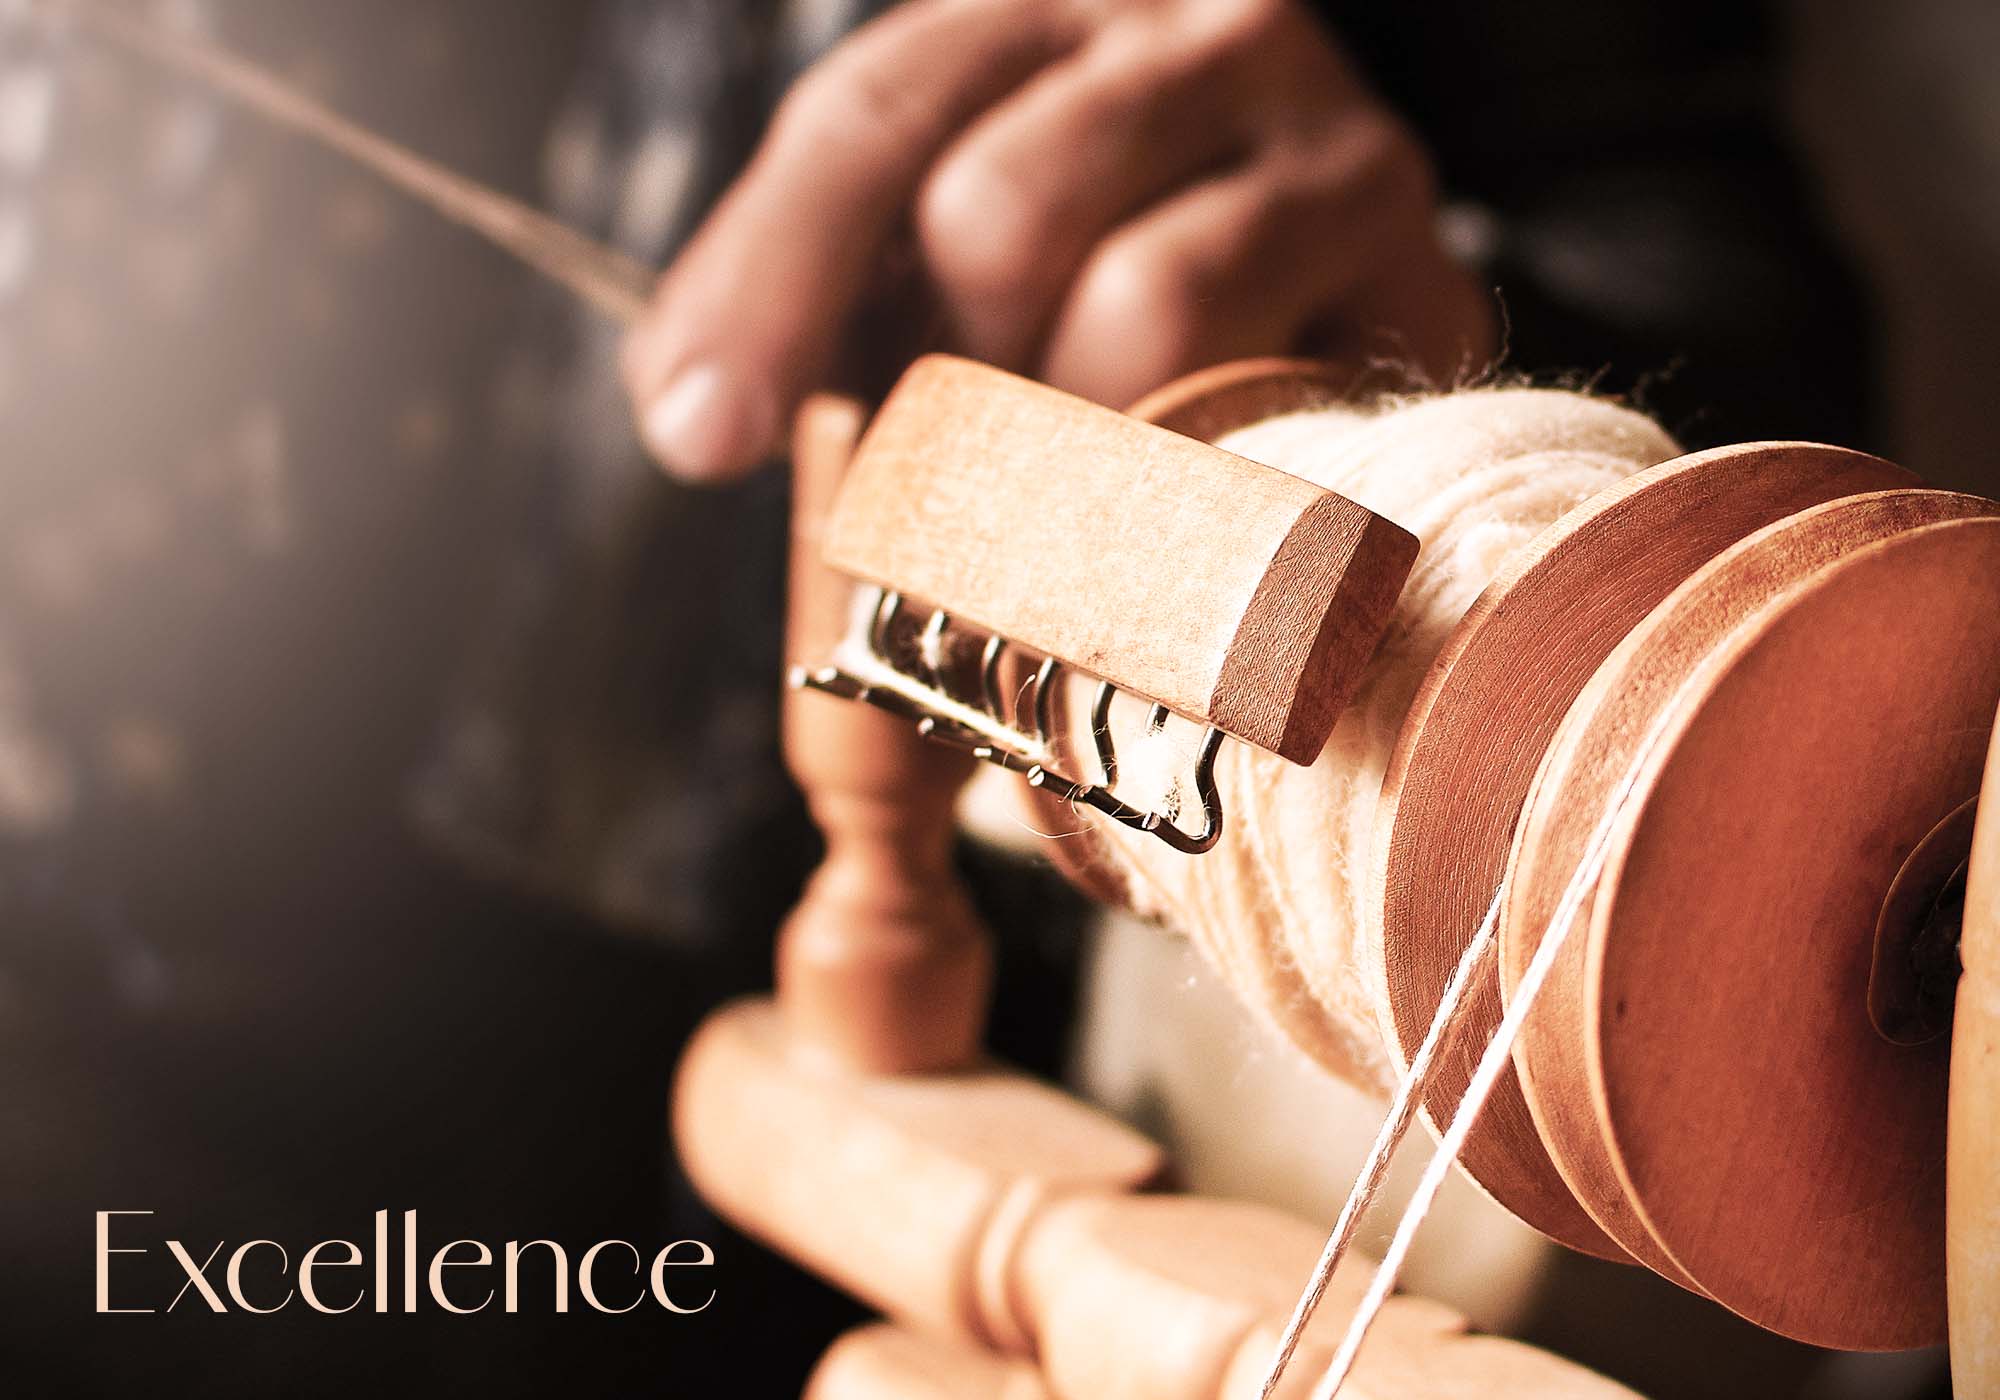 Macchinario tradizionale per la tessitura - La nostra passione per l'artigianato su Beliamo.com